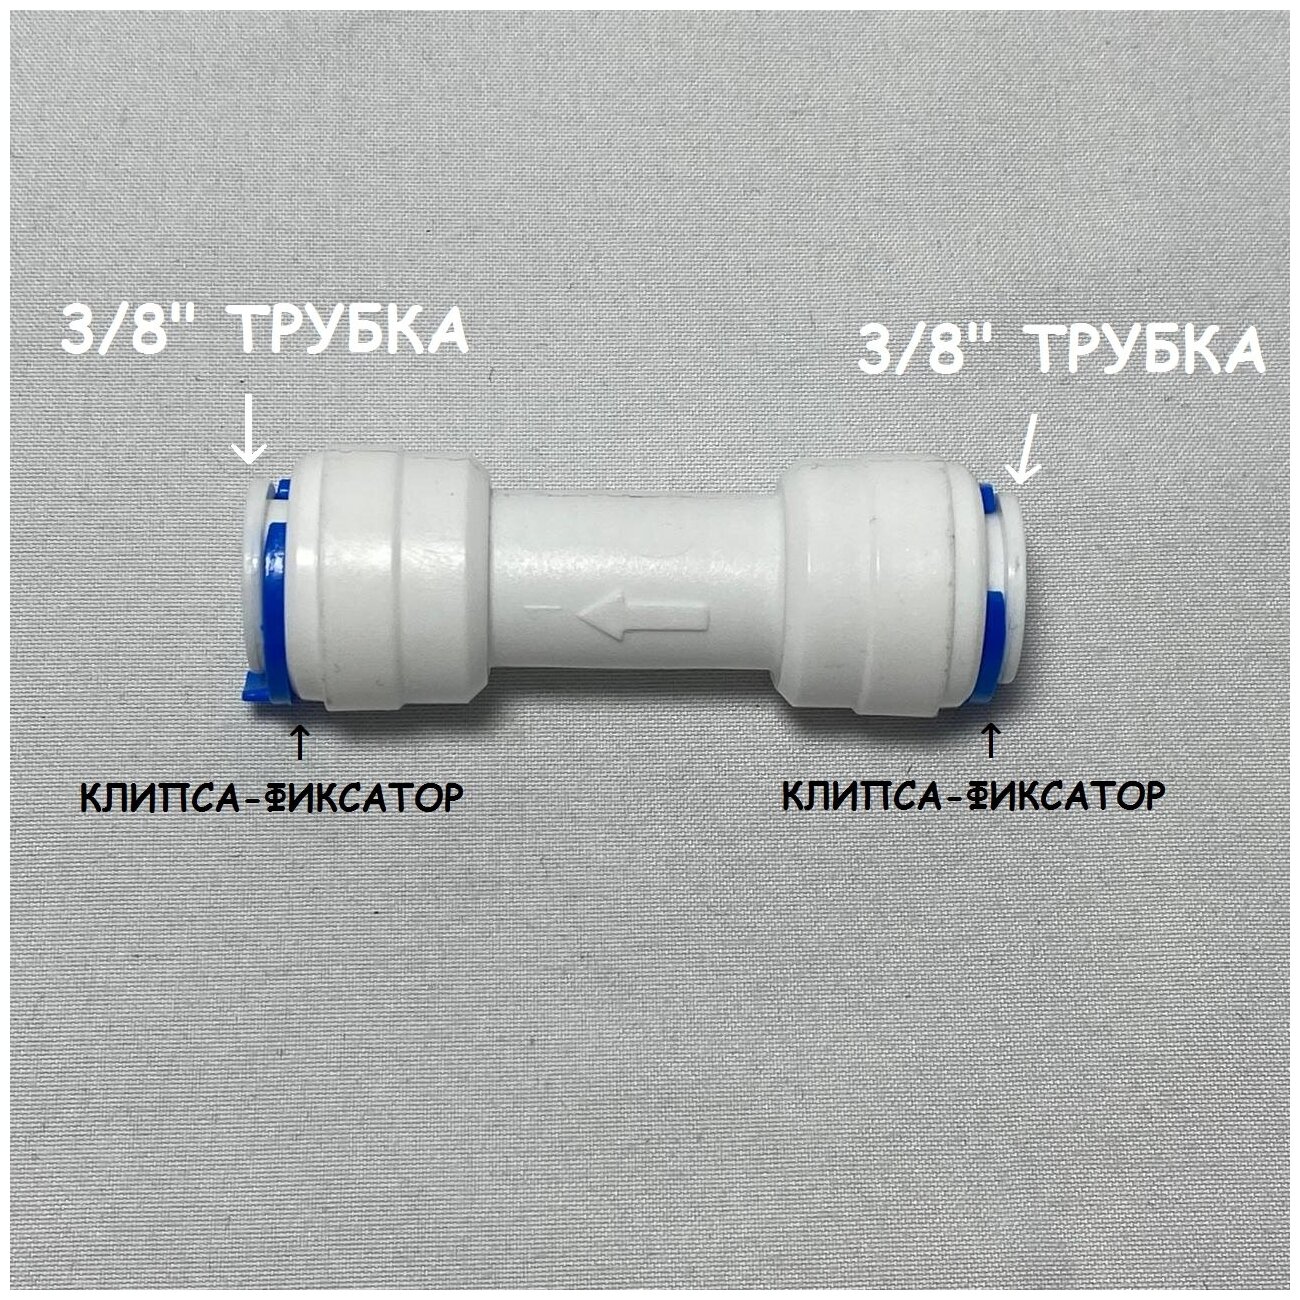 Обратный клапан прямой для фильтра UFAFILTER (3/8" трубка - 3/8" трубка) из пищевого пластика